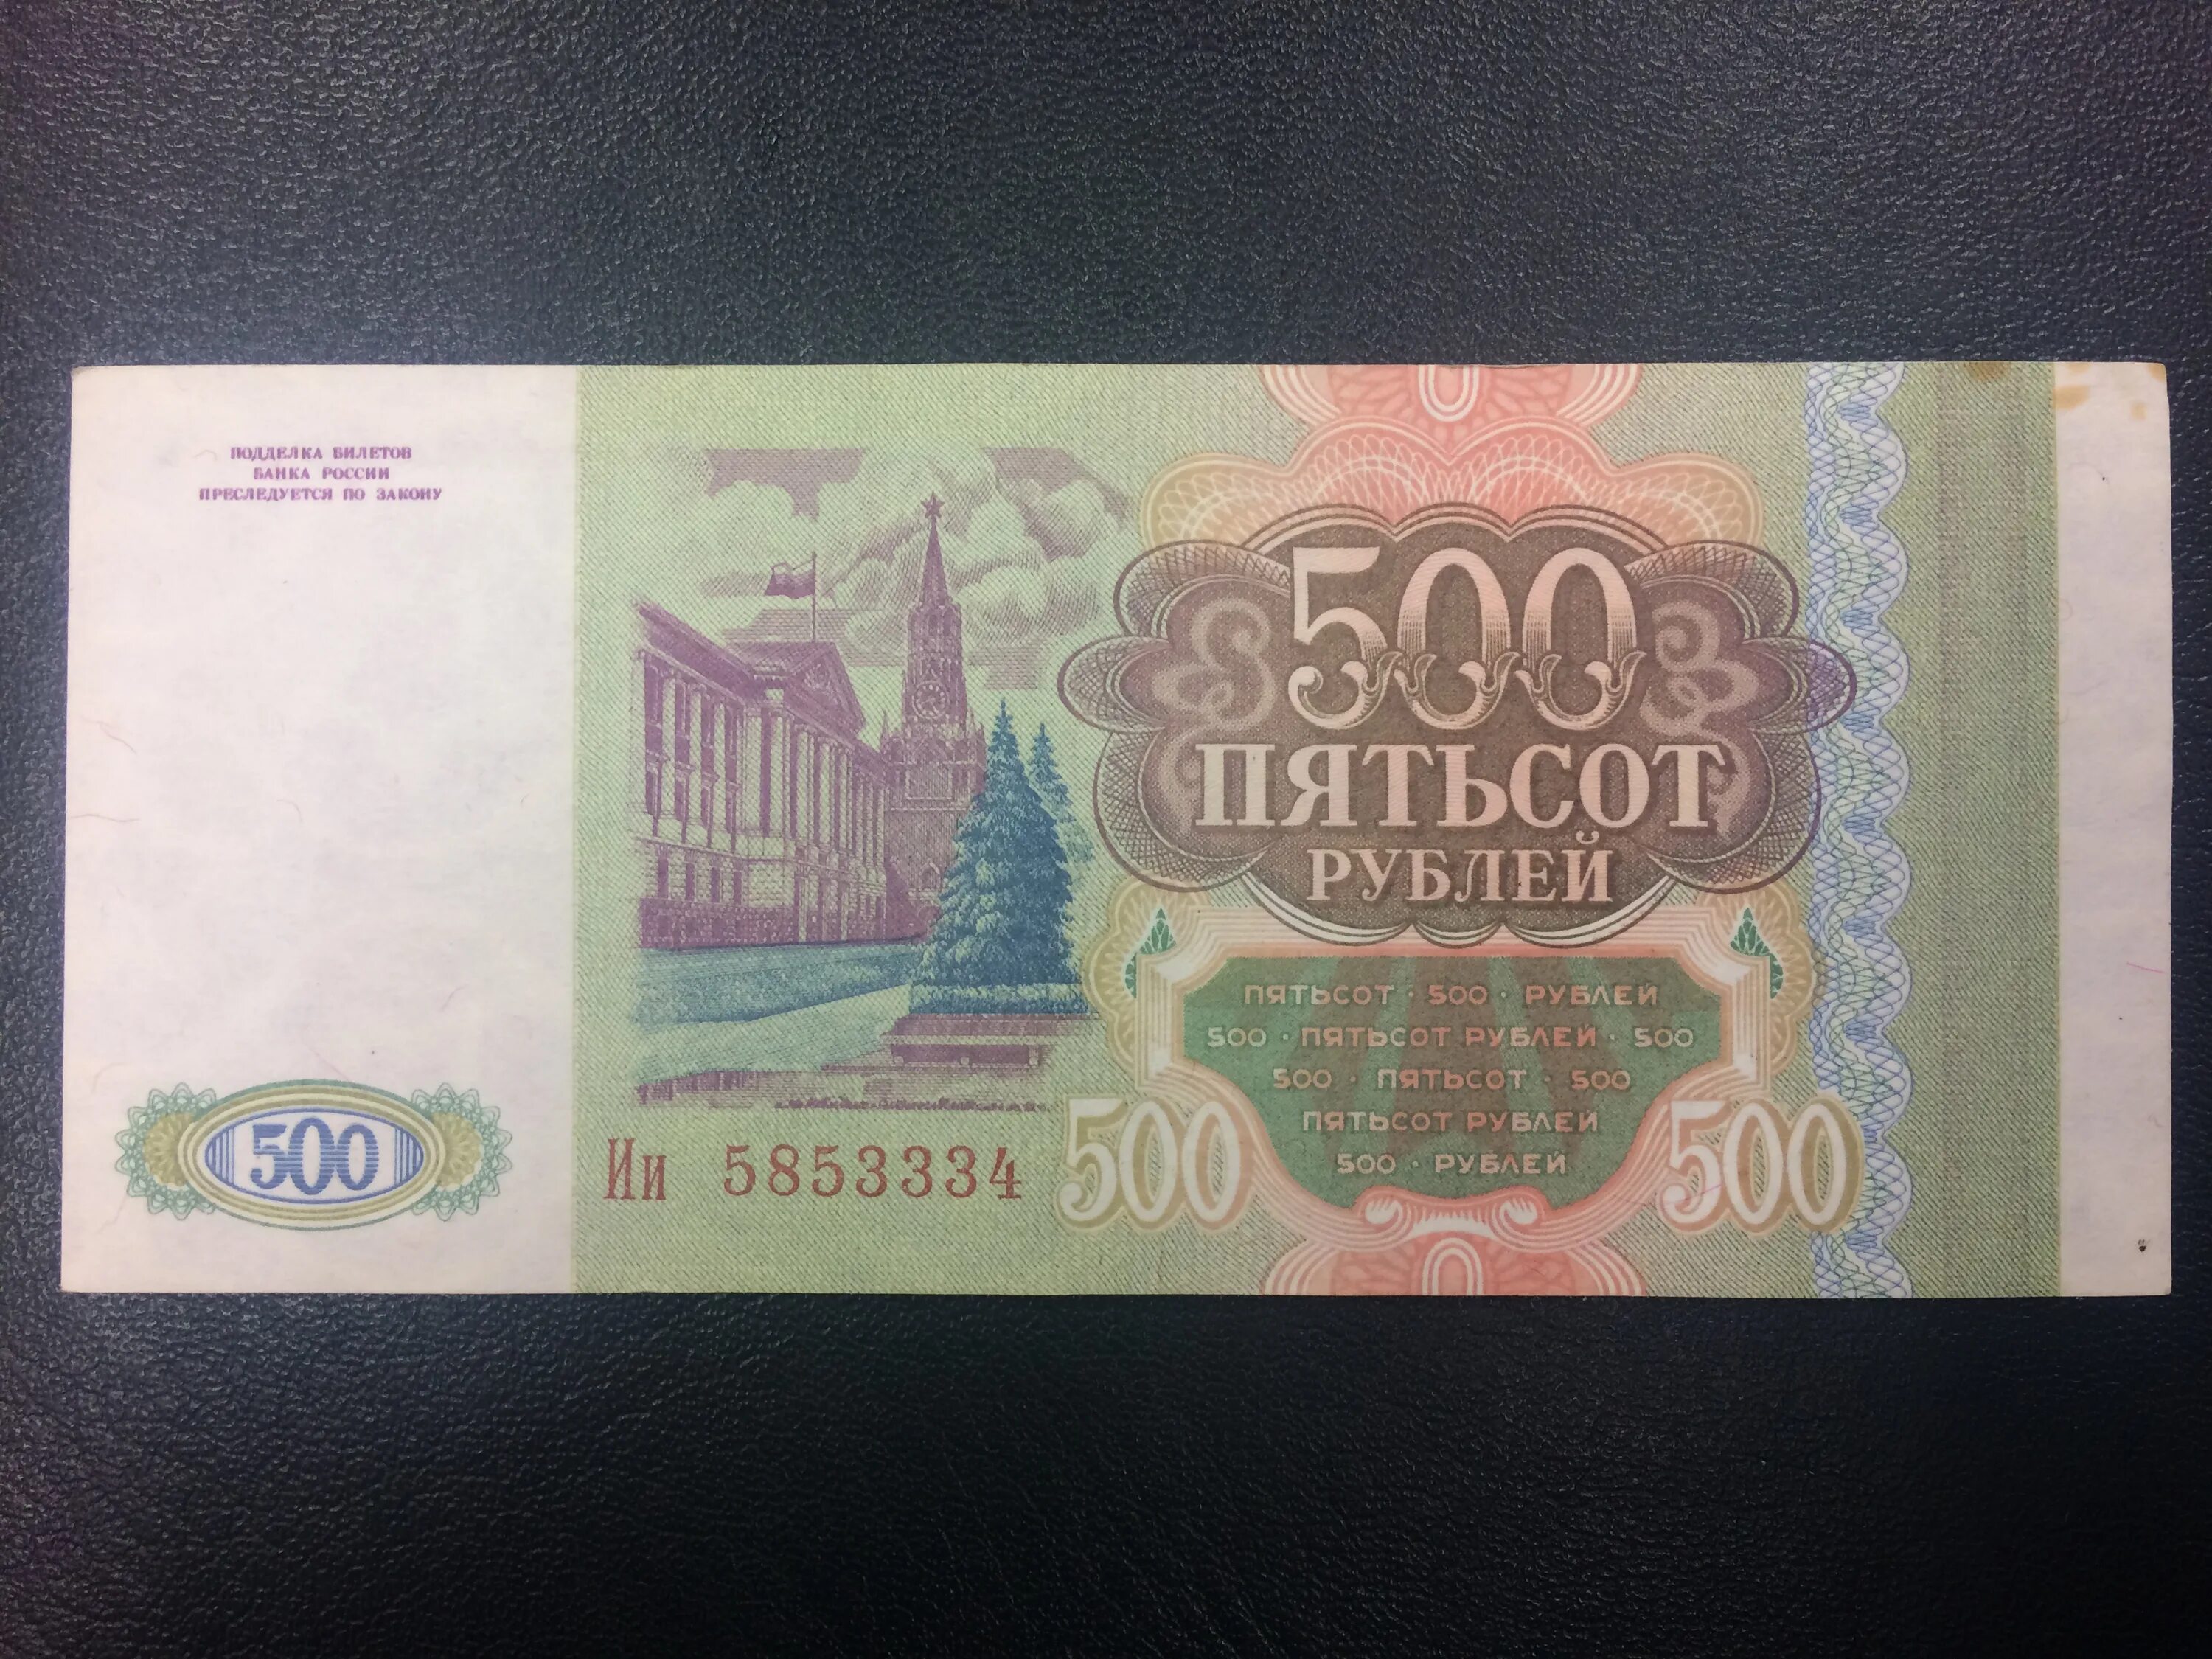 500 рублей россии. 500 Рублей 1993. Купюра 500 рублей 1993 года. Пятьсот рублей 1993 года. Купюра 500 рублей 1993.